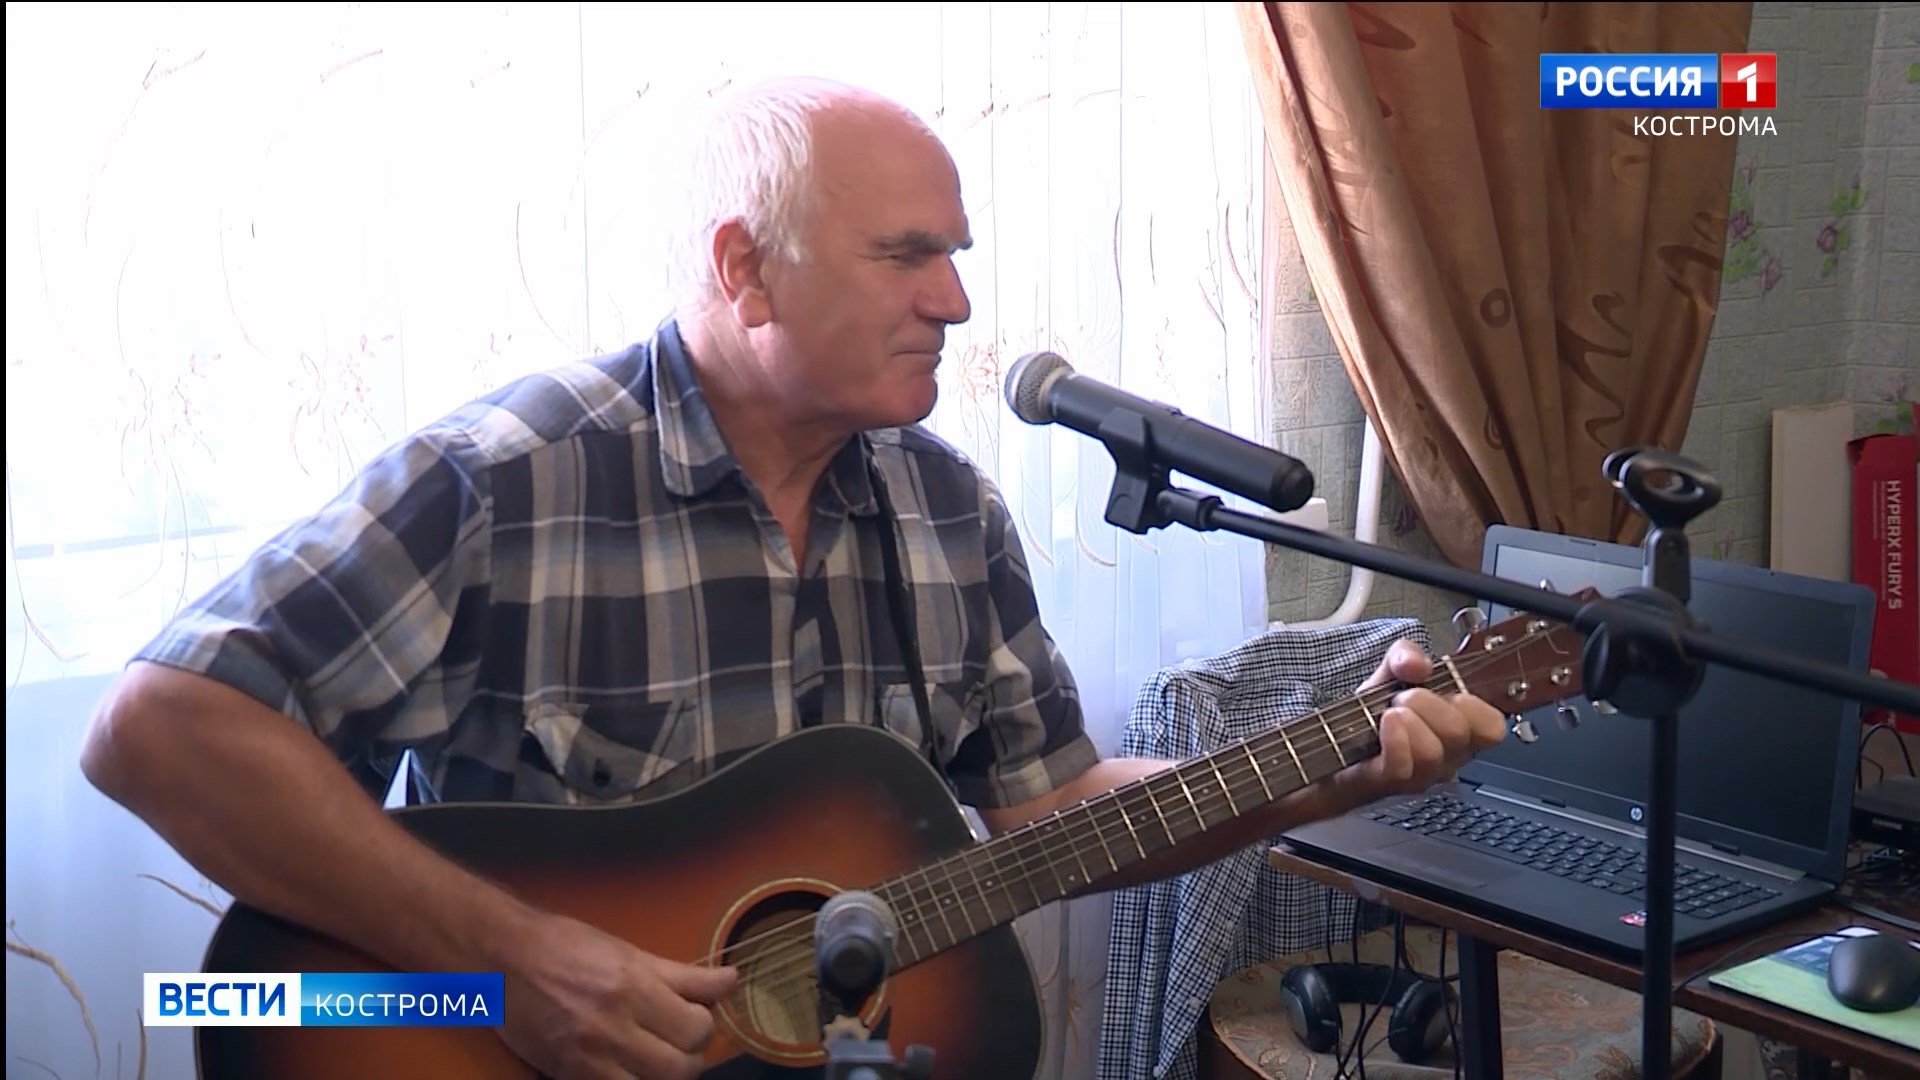 Пенсионер из Костромы каждый день поёт свои песни, чтобы не забыть